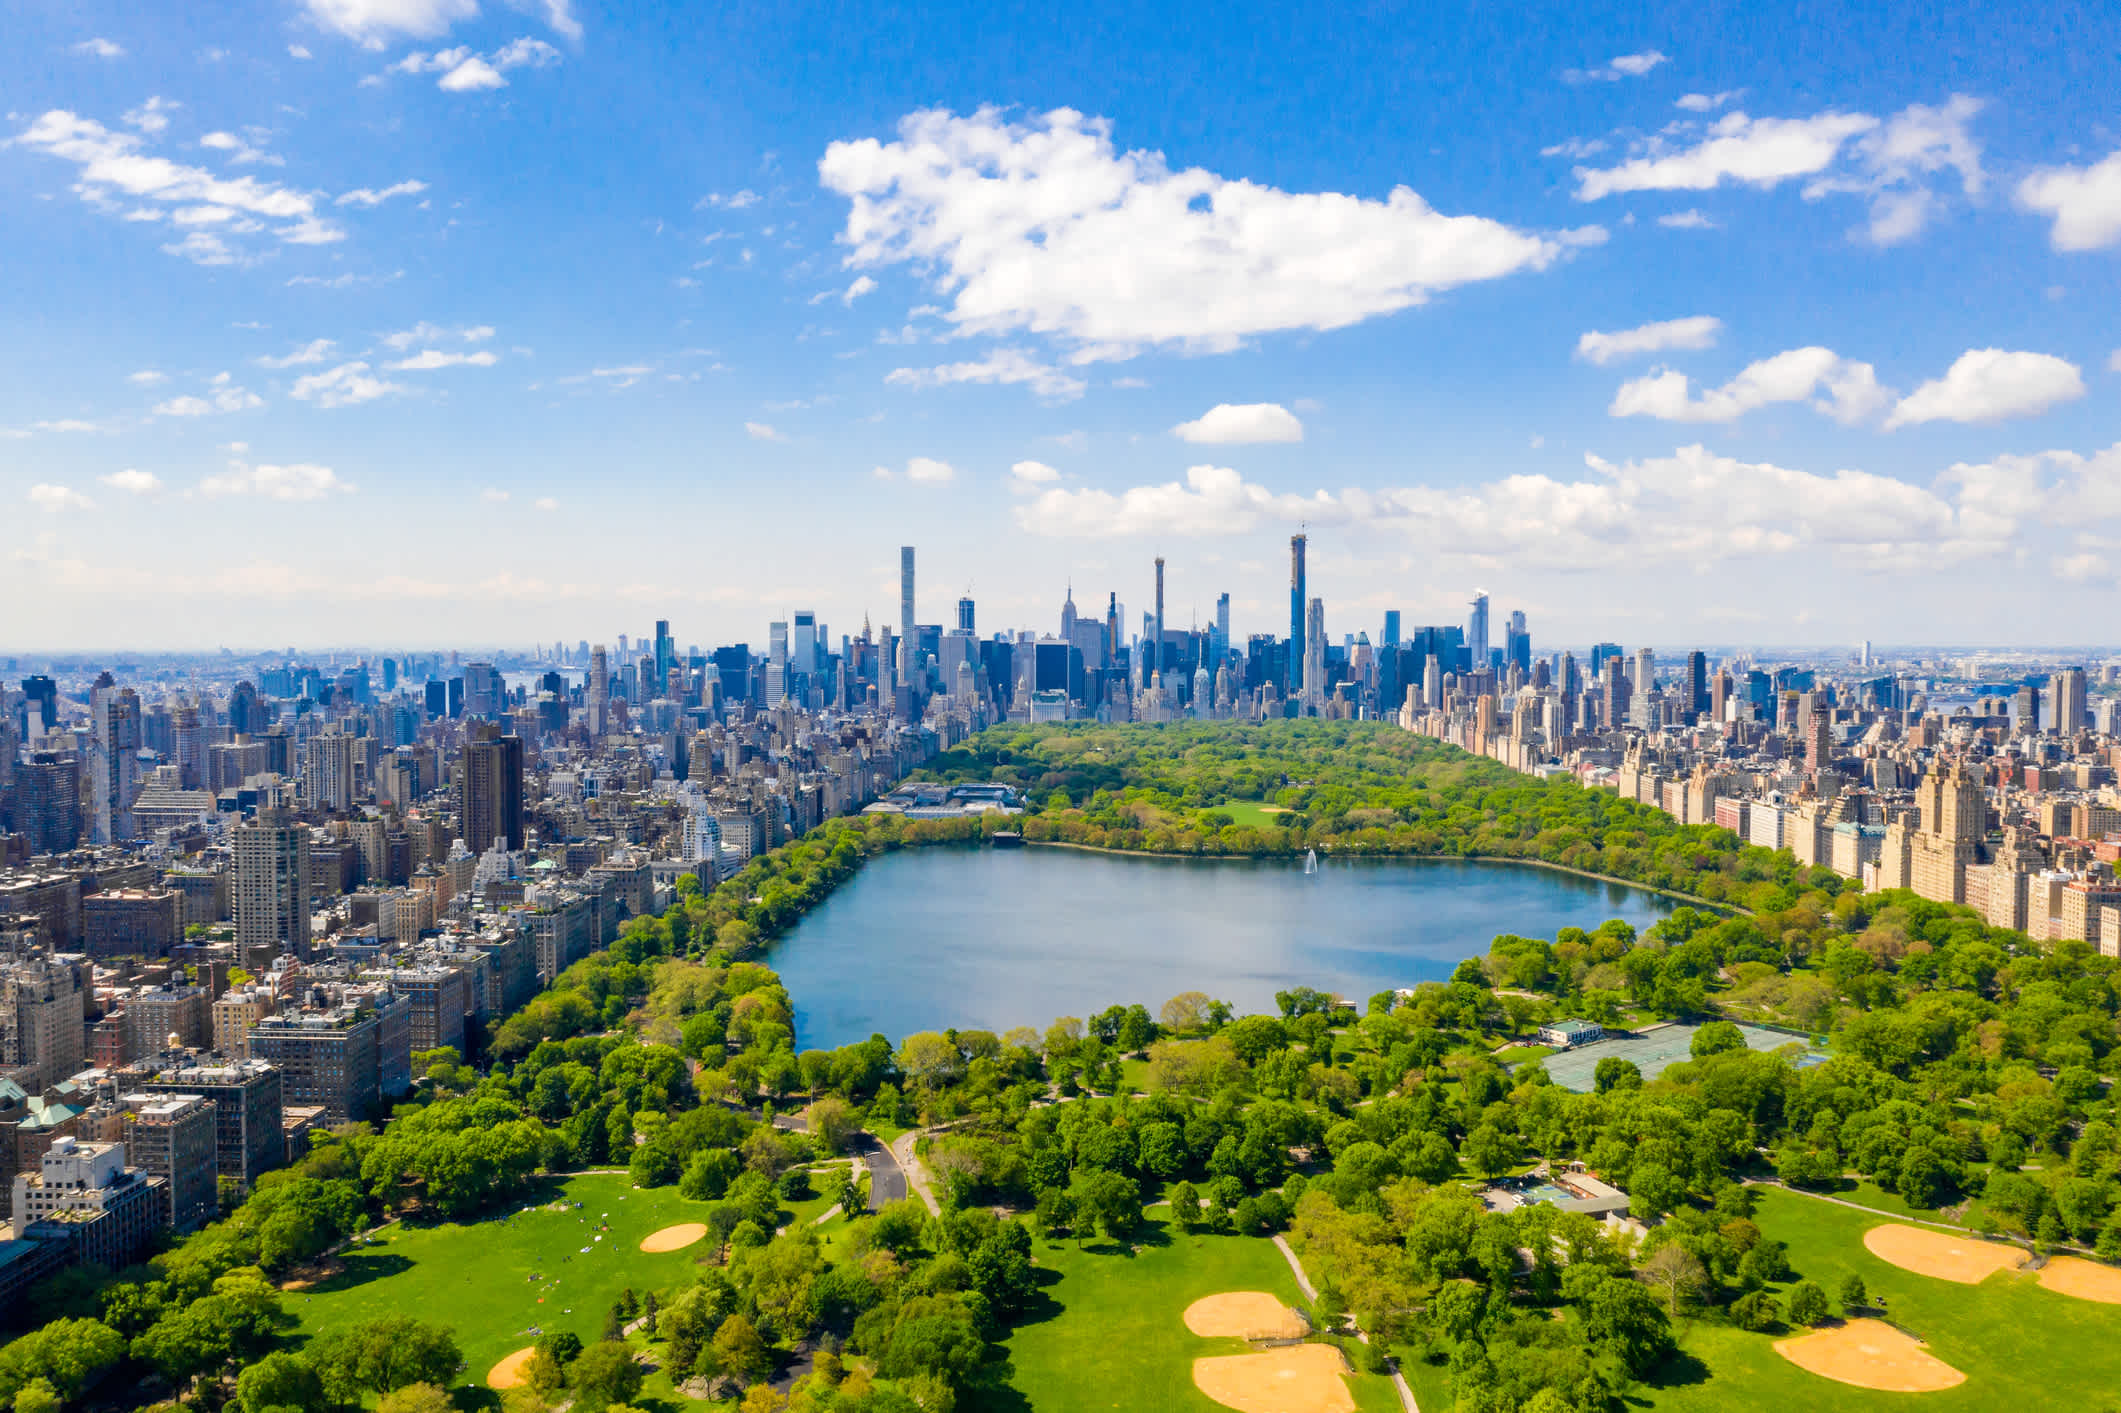 Le Central Park vu d'en haut en été, la meilleure période pour visiter le nord de la côte est des États-Unis